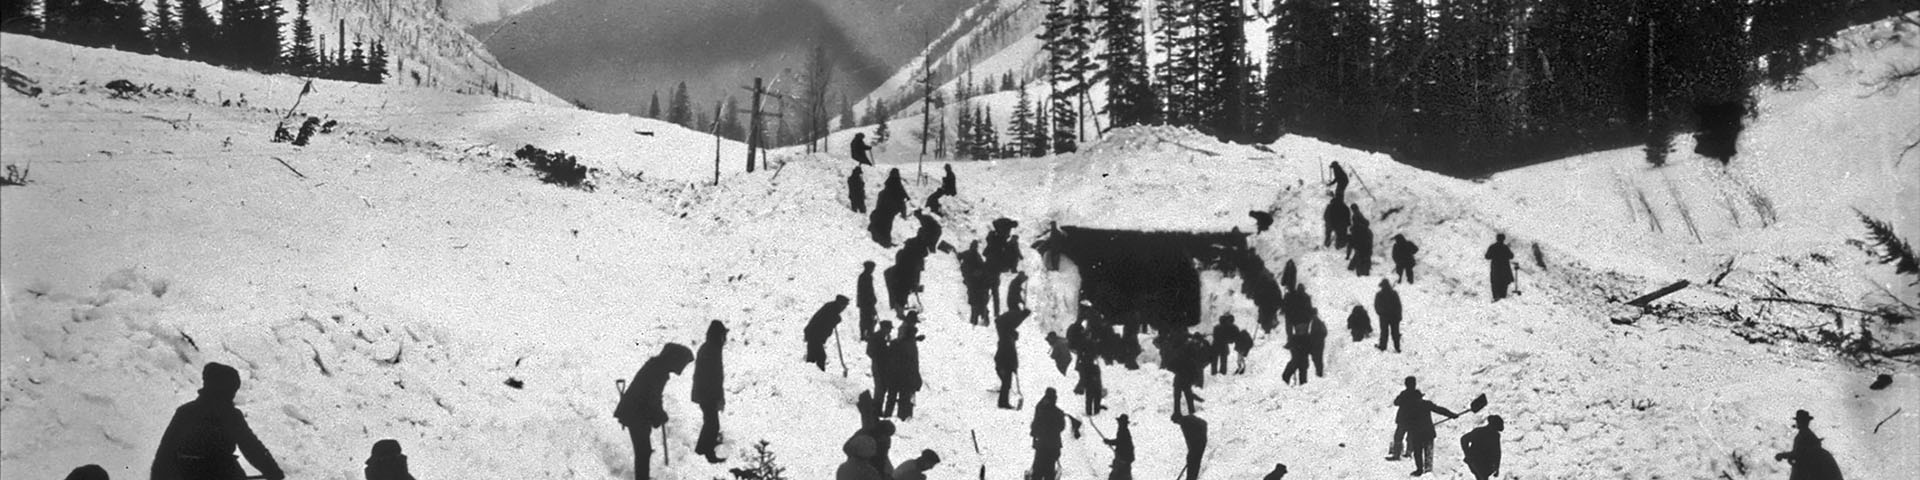  Vieille photo en noir et blanc de 30 personnes différant la balustrade d'une avalanche